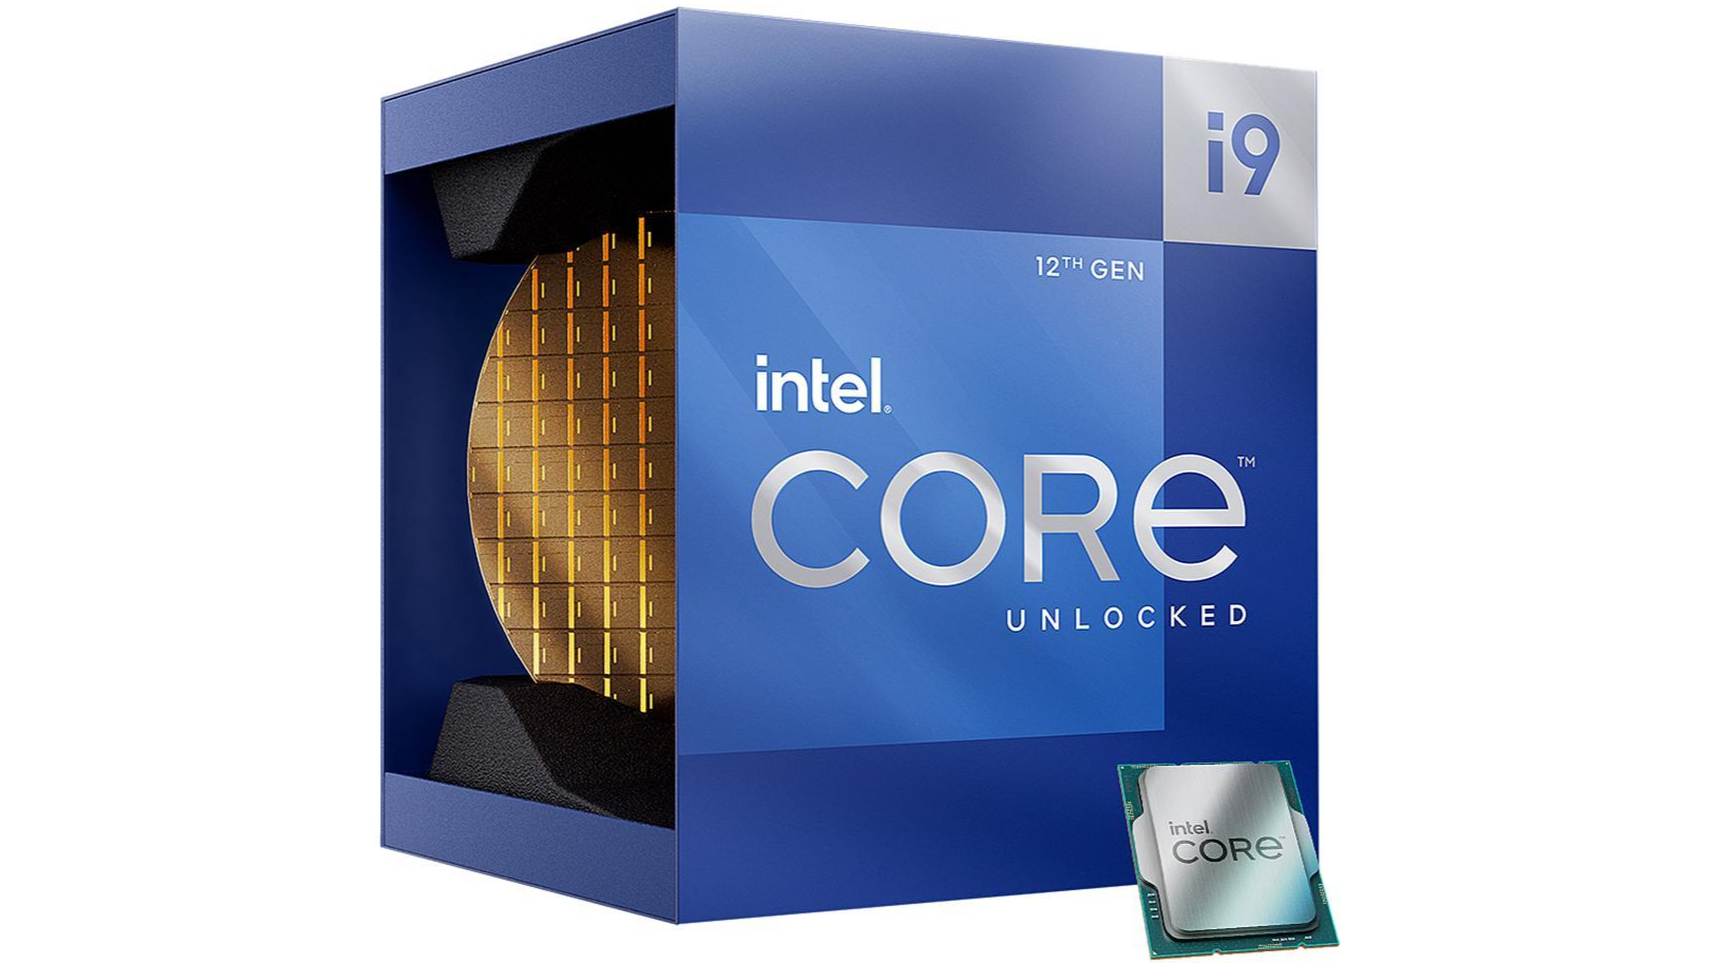 Intel Core i9-12900K ved siden af indpakningen